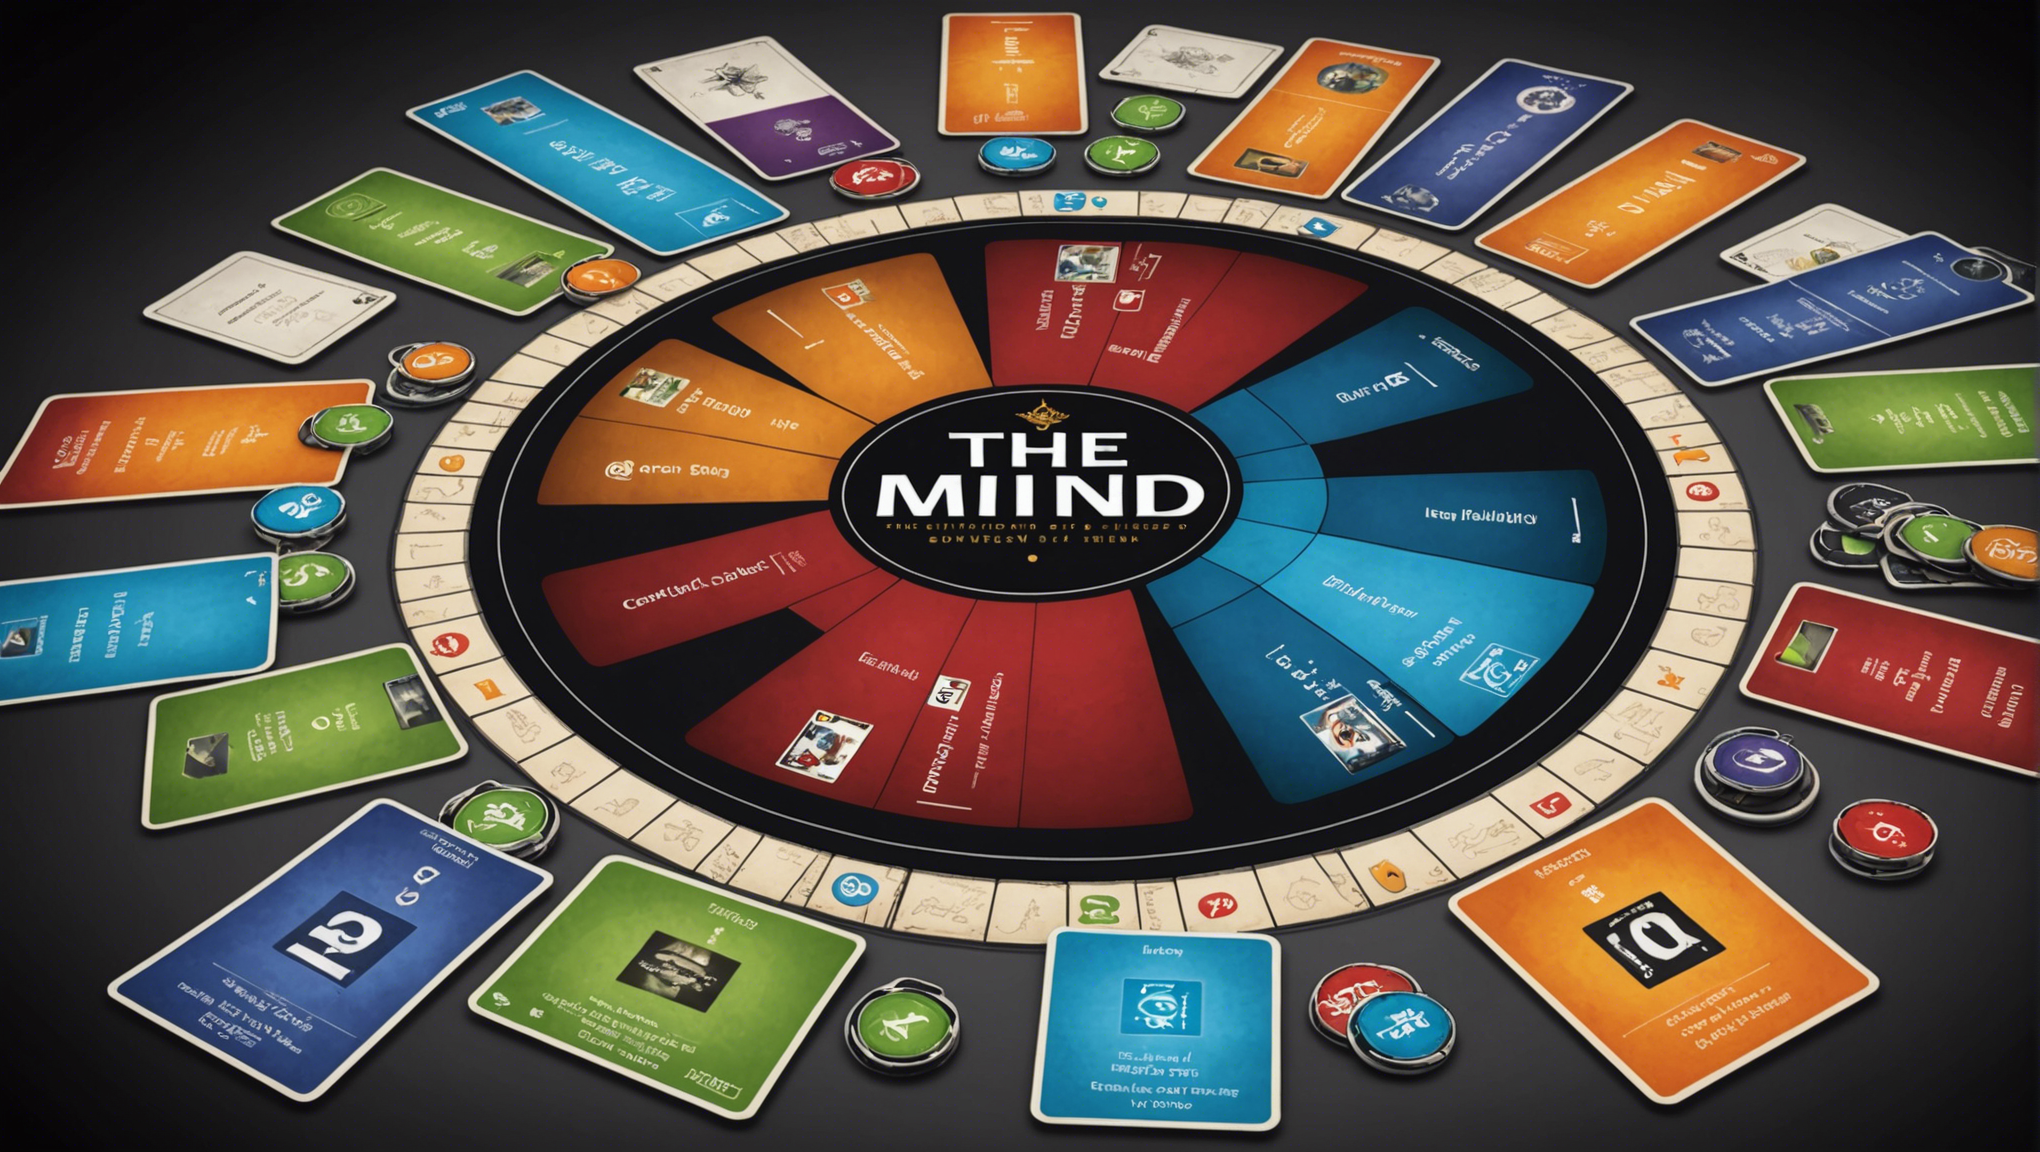 découvrez the mind : la synergie de l'esprit, un jeu de société captivant basé sur la coopération et la synchronisation mentale.